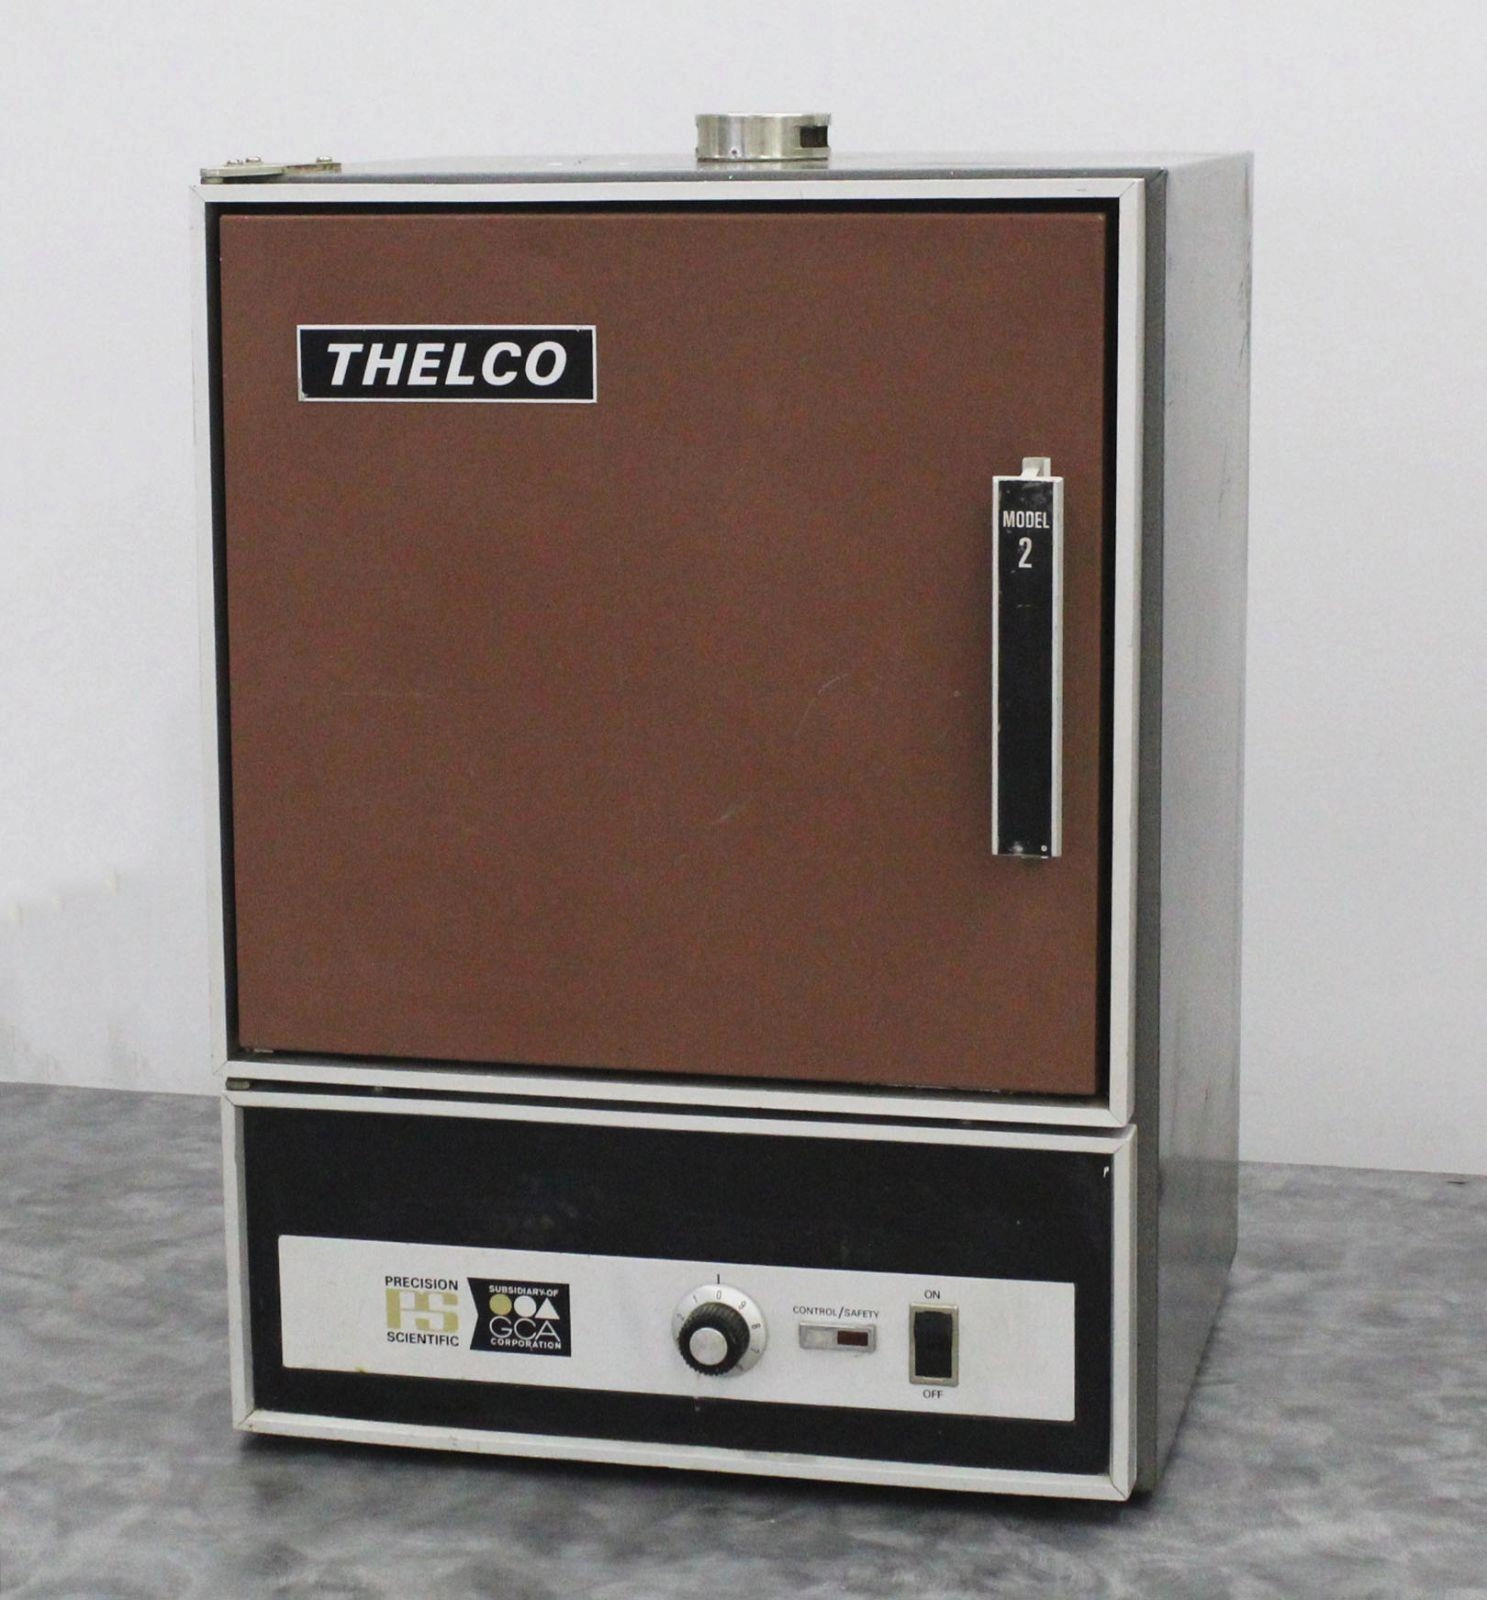 Thelco Precision Scientific Incubator Oven 31480 Model 2